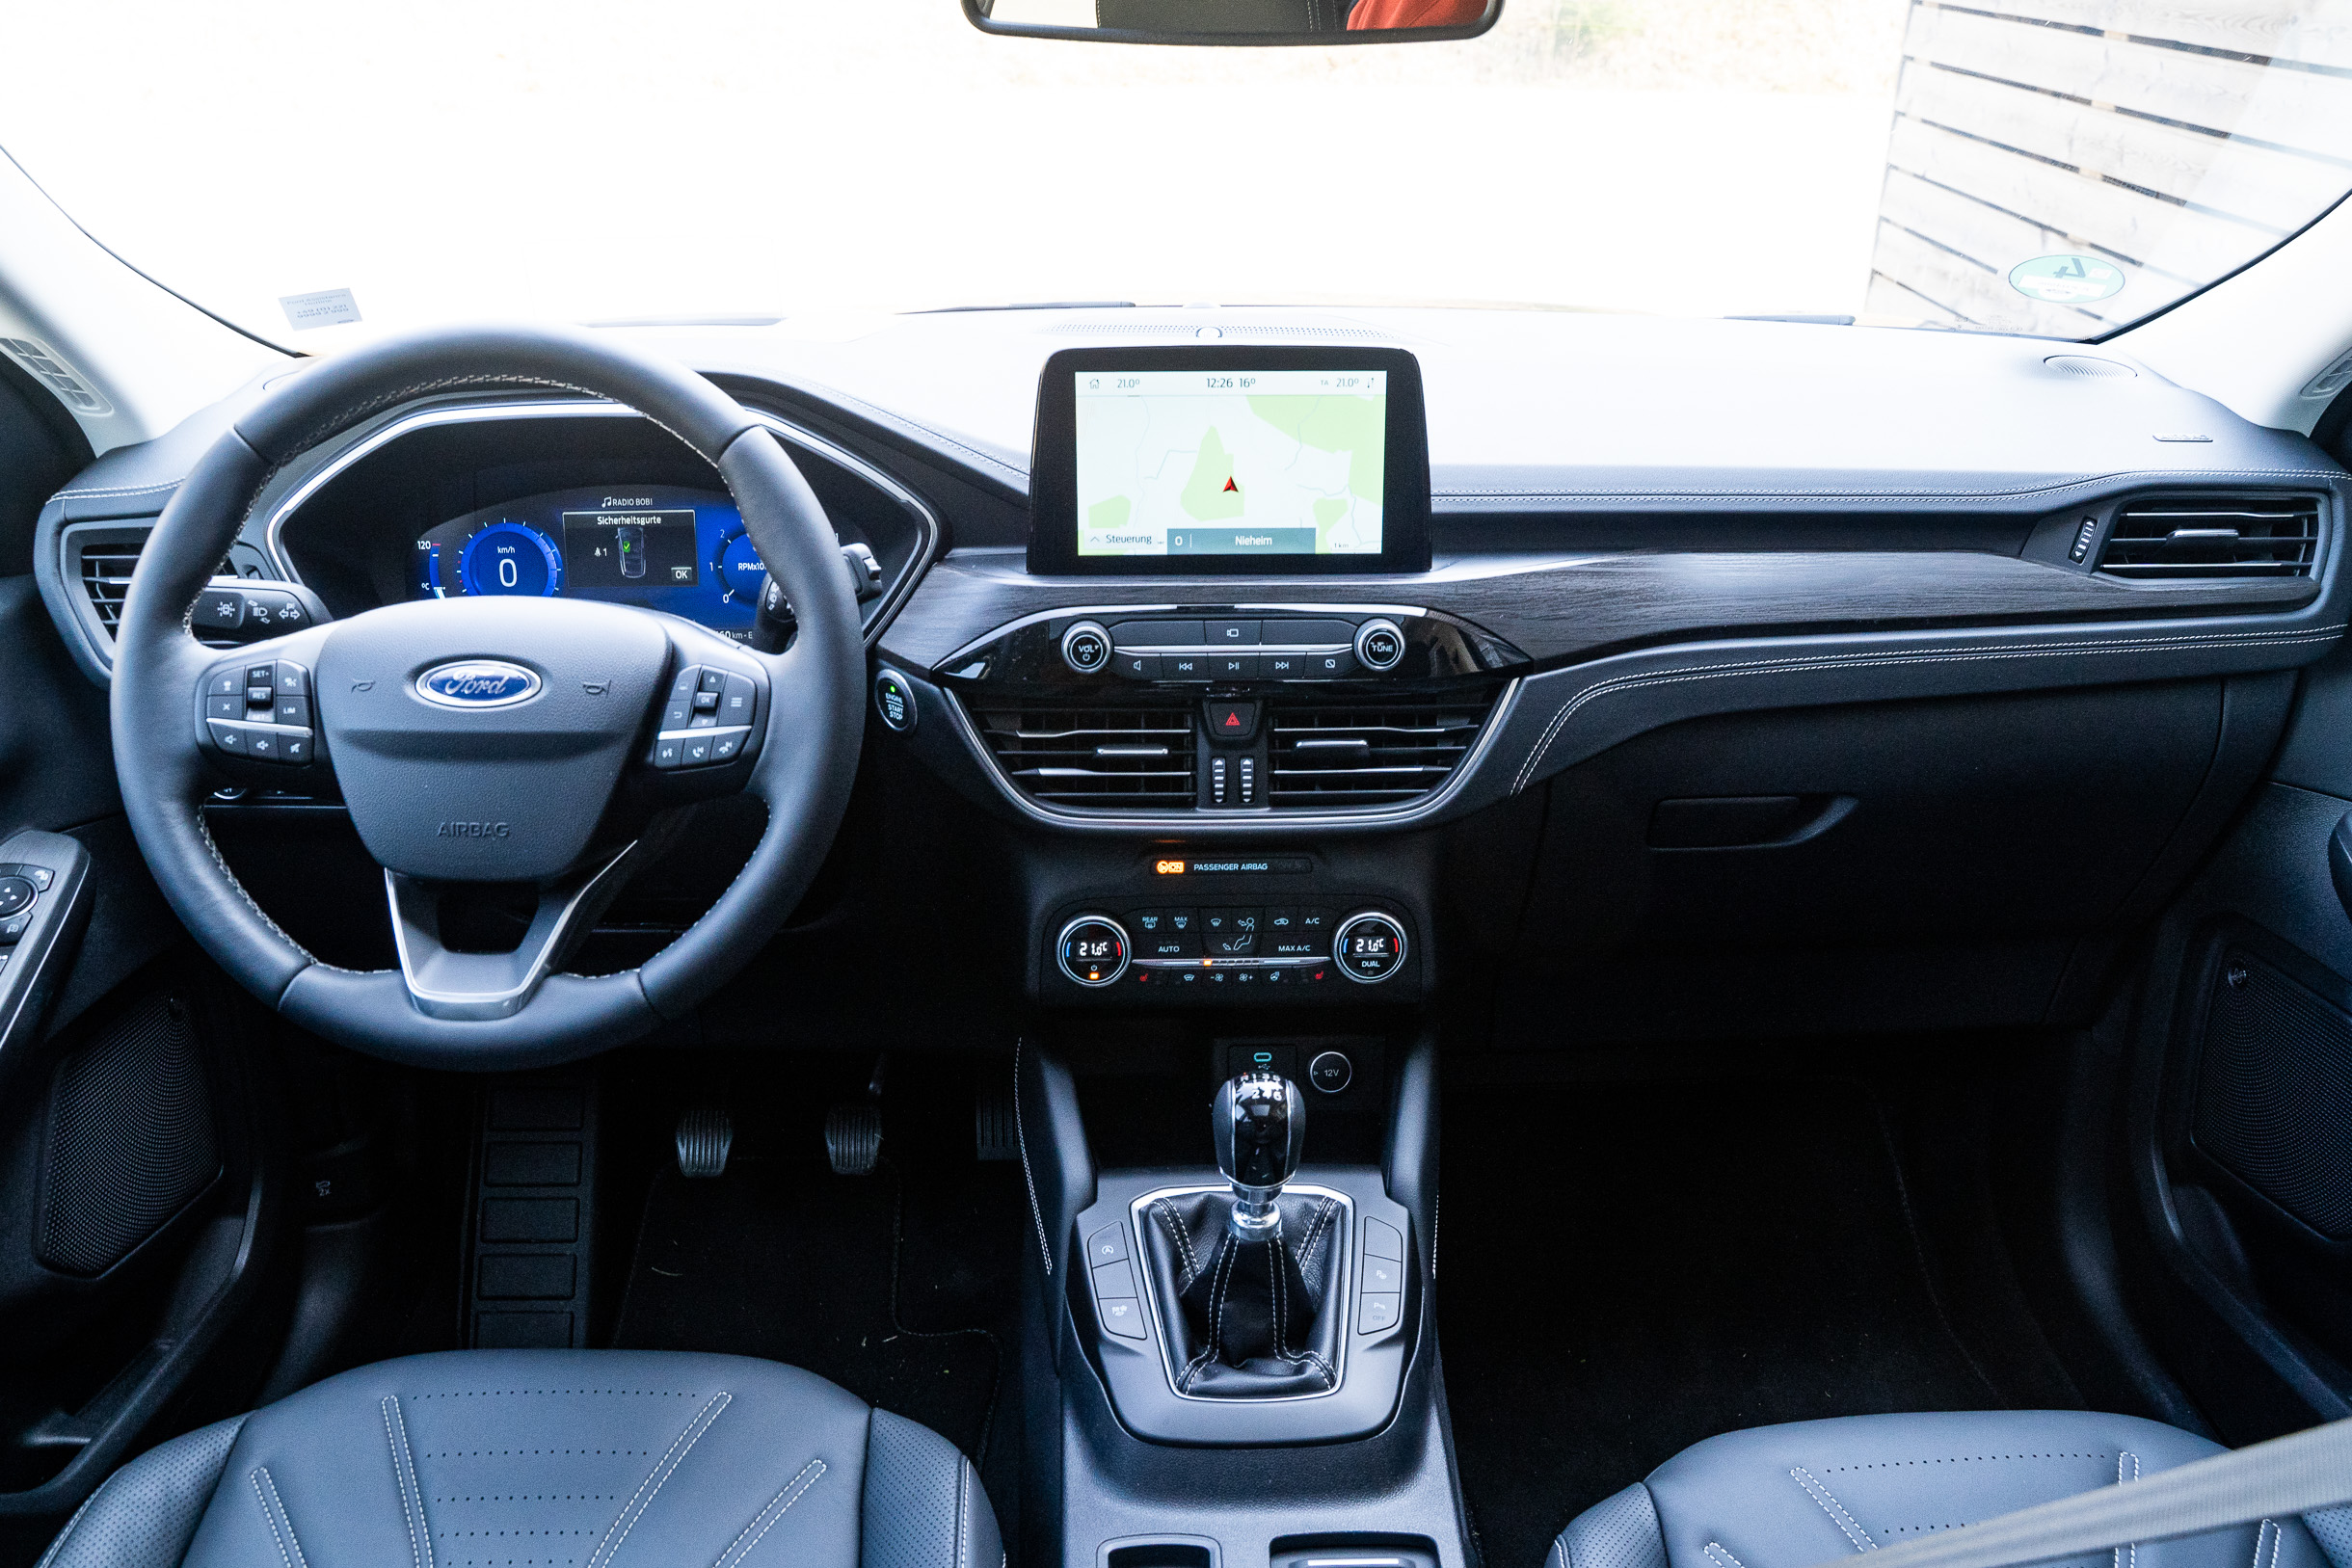 Überraschend agil: Ford Kuga 2.0 EcoBlue Hybrid Vignale im Test